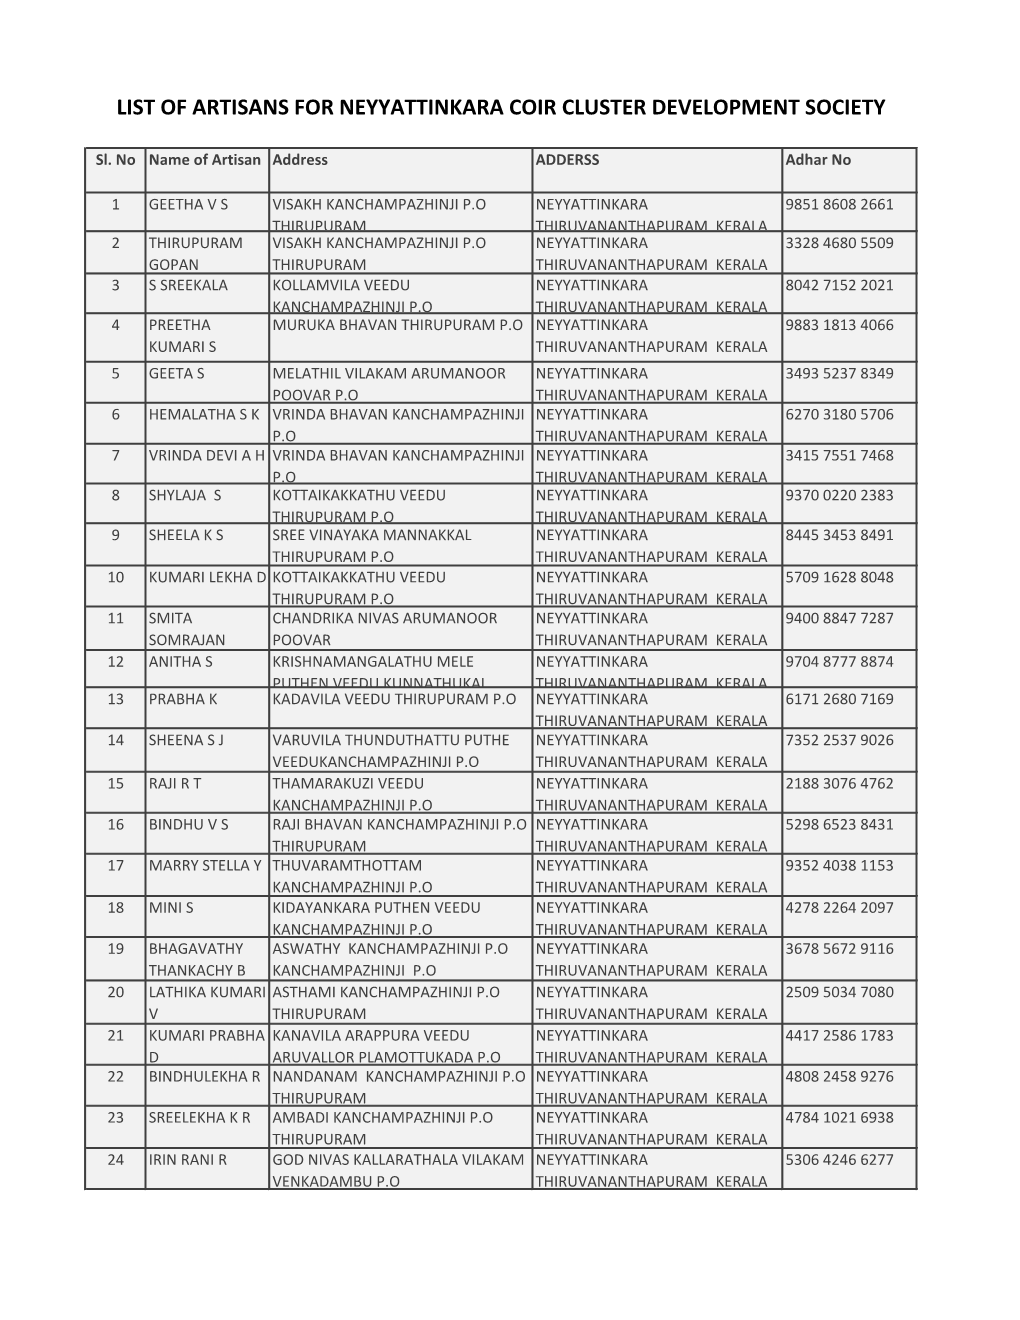 List of Artisans for Neyyattinkara Coir Cluster Development Society